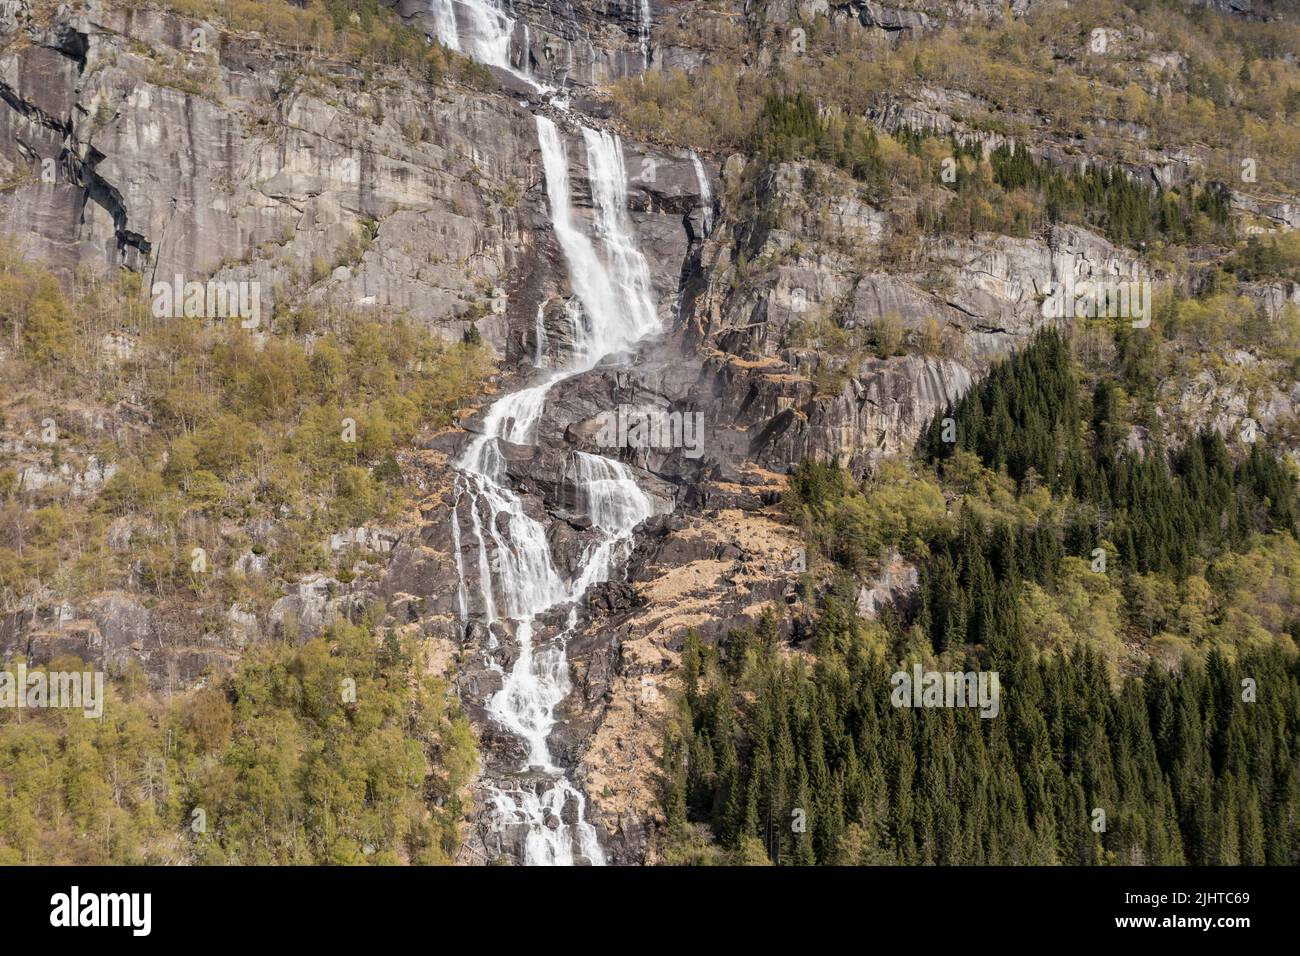 Vista aérea de la cascada Tjornadalsfossen, al sur de Odda, Rogaland, Noruega Foto de stock